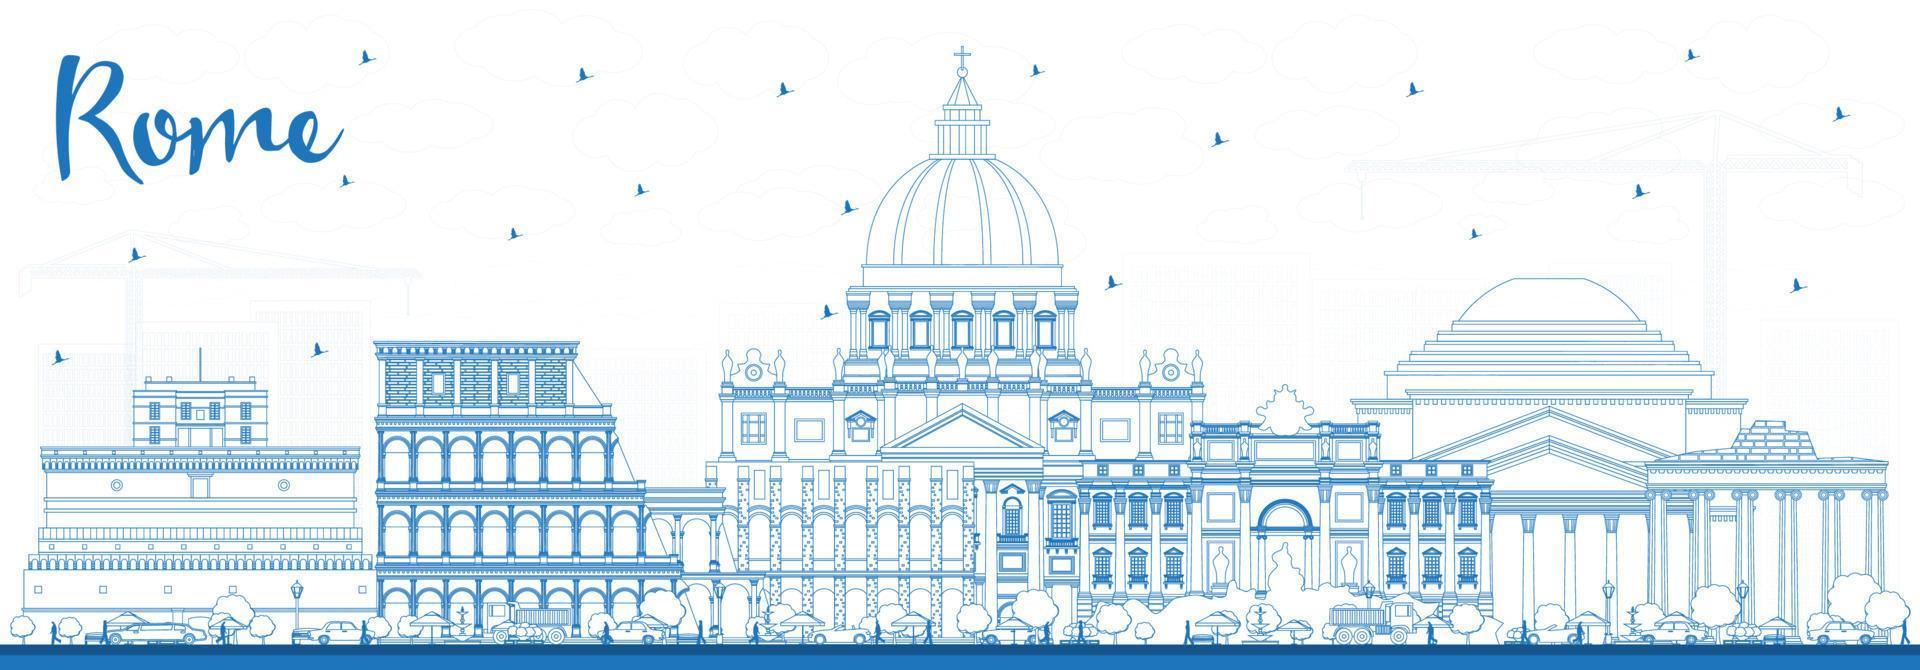 delinear el horizonte de la ciudad de roma italia con edificios azules. vector